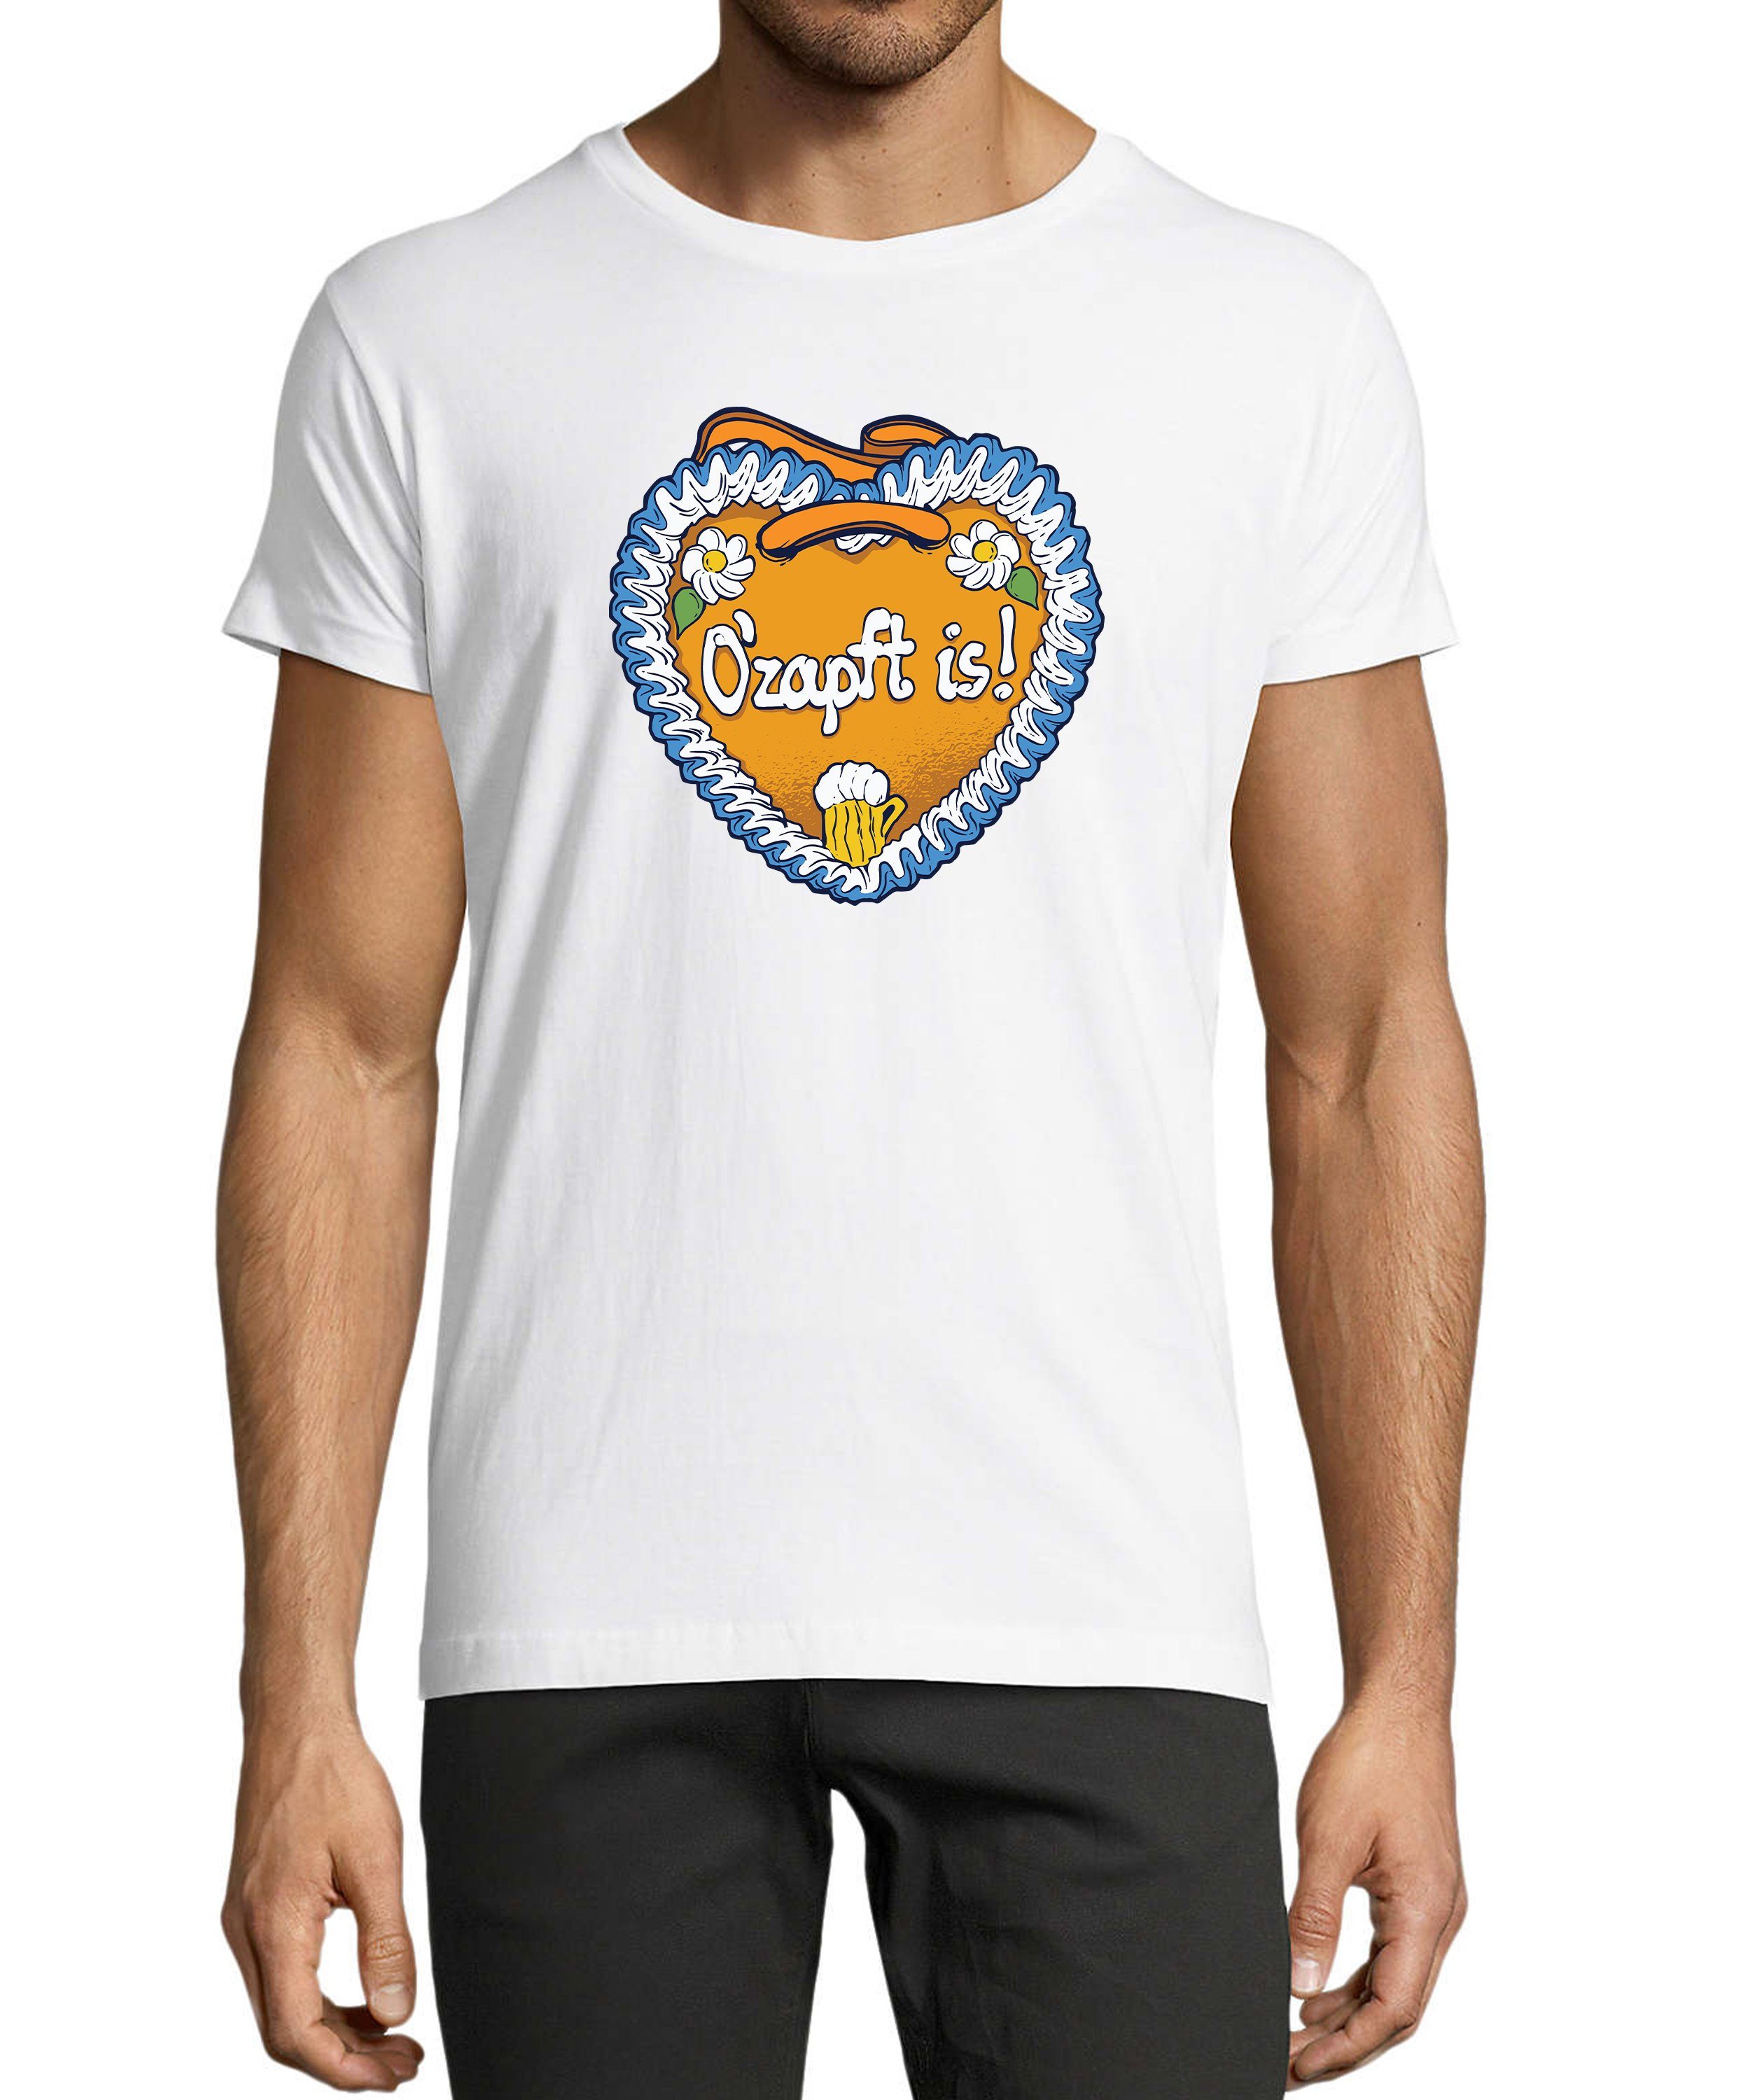 Trinkshirt Regular Herren Aufdruck - Print weiss Baumwollshirt is Fun Shirt mit MyDesign24 T-Shirt O'Zapft i313 Fit,